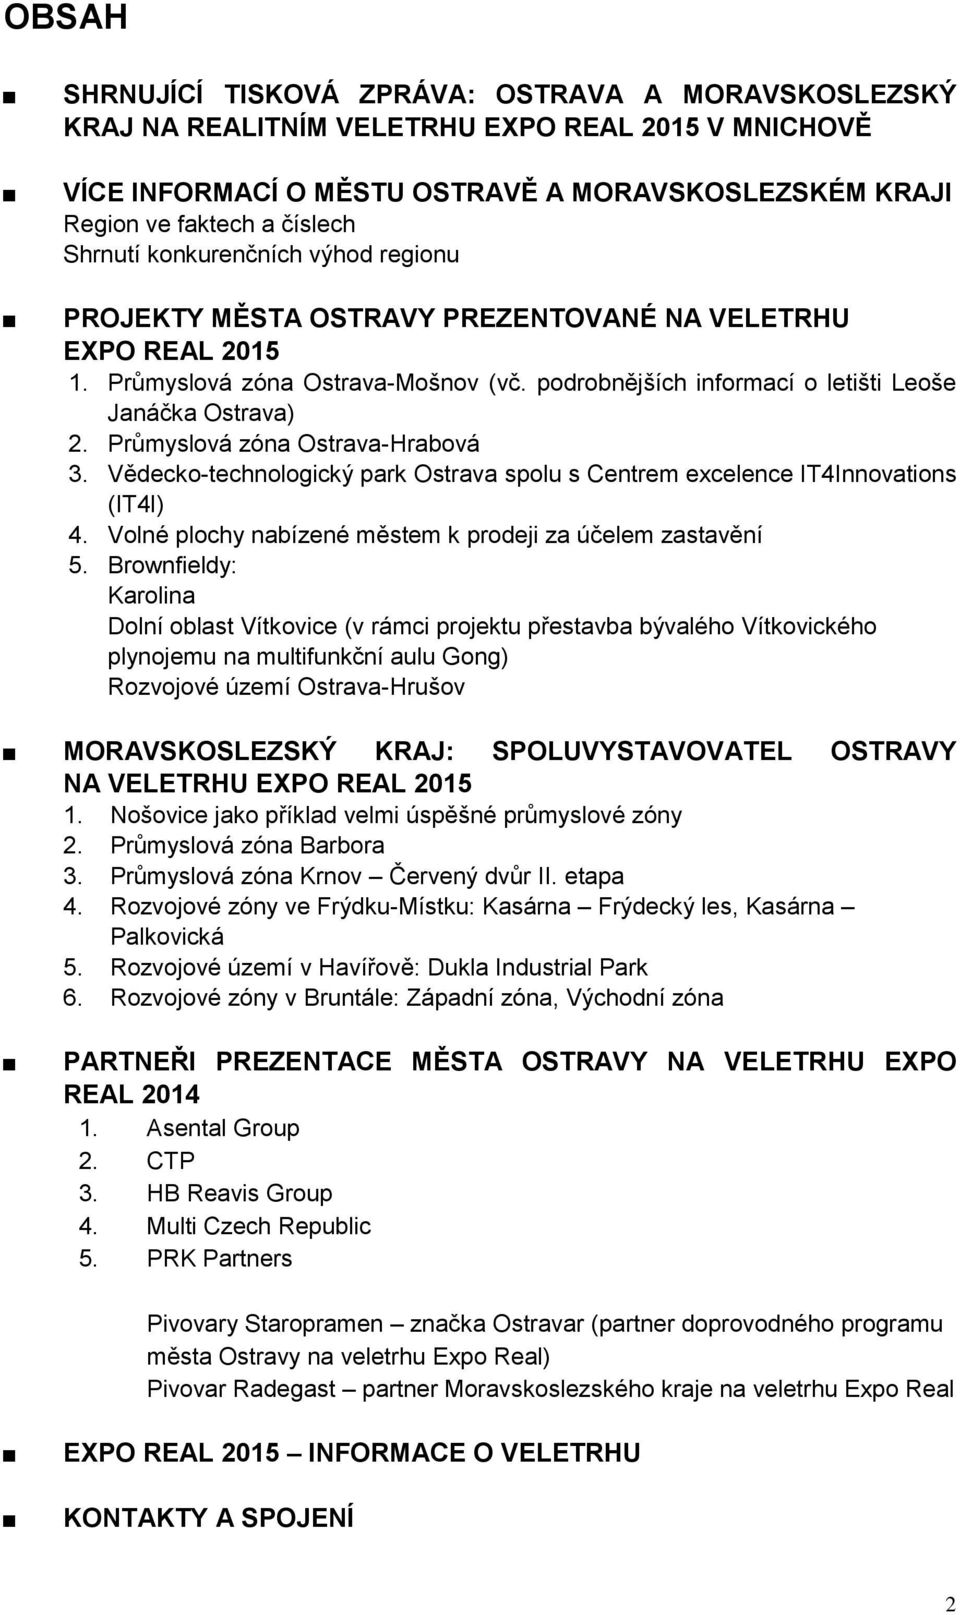 Průmyslová zóna Ostrava-Hrabová 3. Vědecko-technologický park Ostrava spolu s Centrem excelence IT4Innovations (IT4I) 4. Volné plochy nabízené městem k prodeji za účelem zastavění 5.